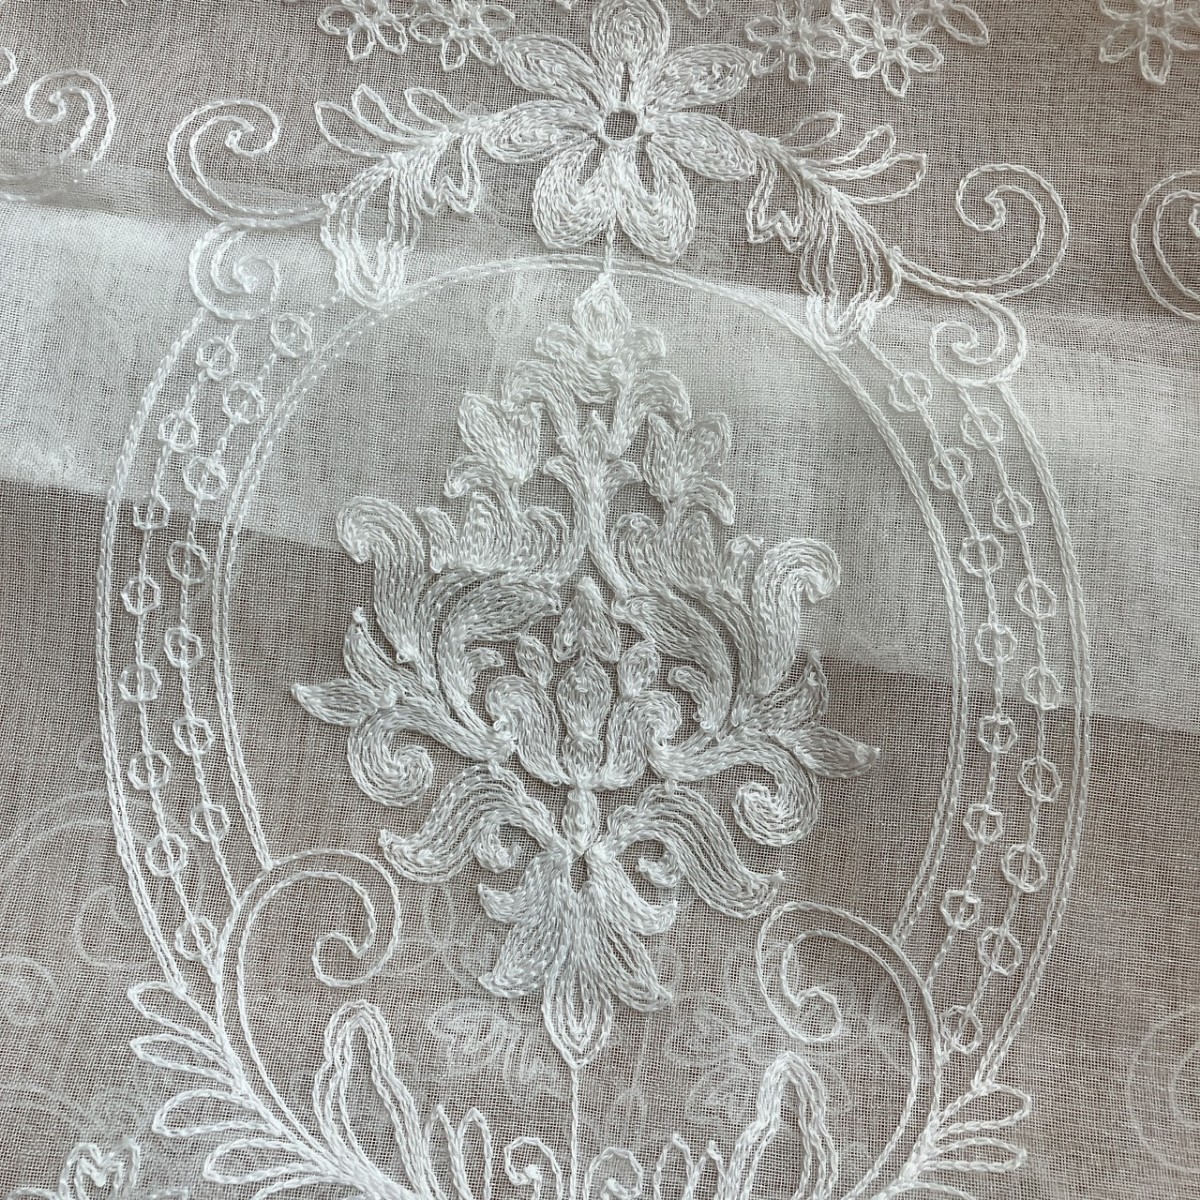  короткие занавески вышивка белый простой 1 листов ширина 103× длина 106 noren Турция рисунок 